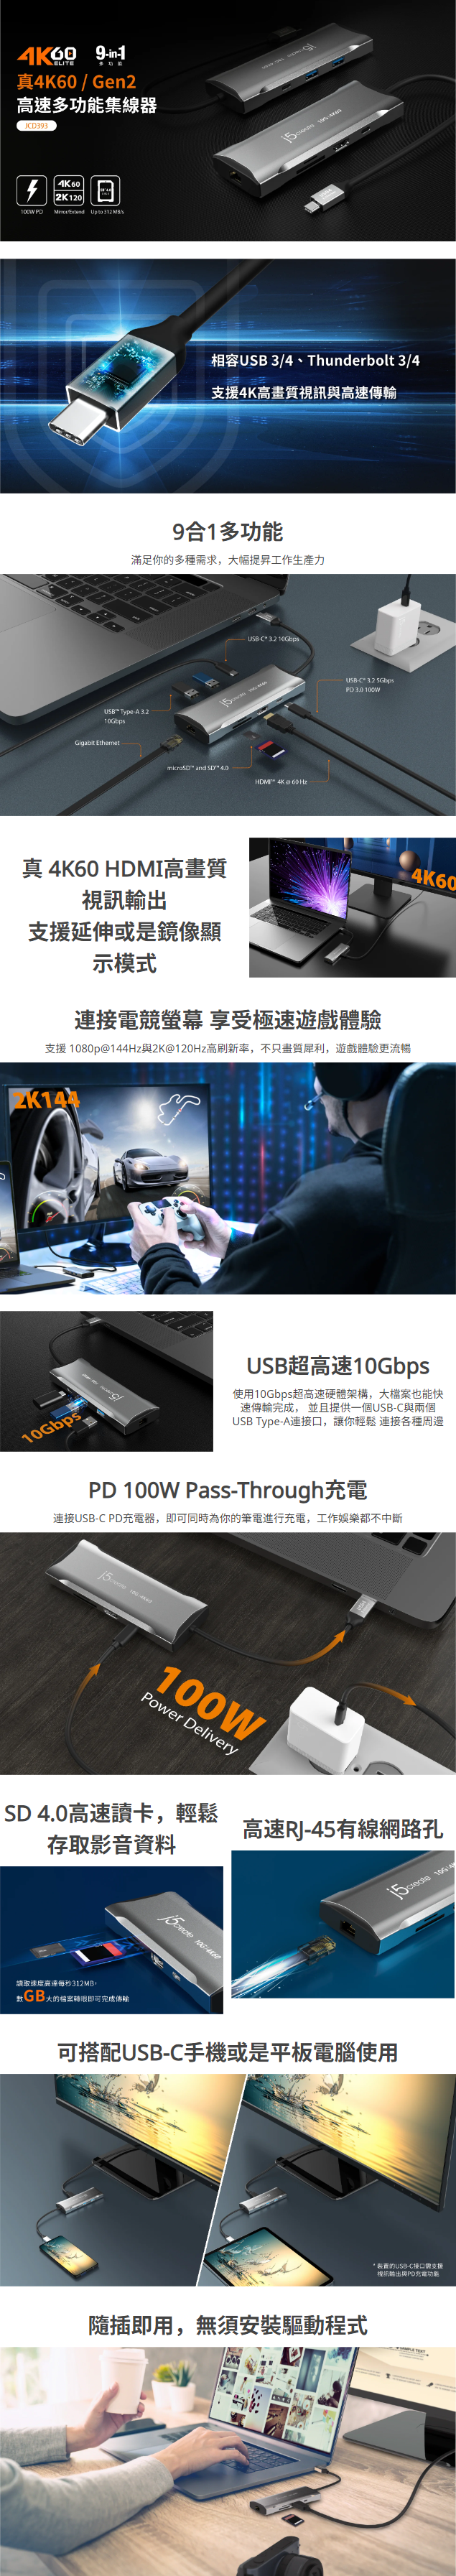 9合1多功能  滿足你的多種需求，大幅提昇工作生產力      真 4K60 HDMI高畫質視訊輸出 支援延伸或是鏡像顯示模式  連接電競螢幕 享受極速遊戲體驗  支援 1080p@144Hz與2K@120Hz高刷新率，不只畫質犀利，遊戲體驗更流暢      USB超高速10Gbps  使用10Gbps超高速硬體架構，大檔案也能快速傳輸完成， 並且提供一個USB-C與兩個USB Type-A連接口，讓你輕鬆 連接各種周邊  PD 100W Pass-Through充電  連接USB-C PD充電器，即可同時為你的筆電進行充電，工作娛樂都不中斷    SD 4.0高速讀卡，輕鬆存取影音資料   高速RJ-45有線網路孔   可搭配USB-C手機或是平板電腦使用     隨插即用，無須安裝驅動程式